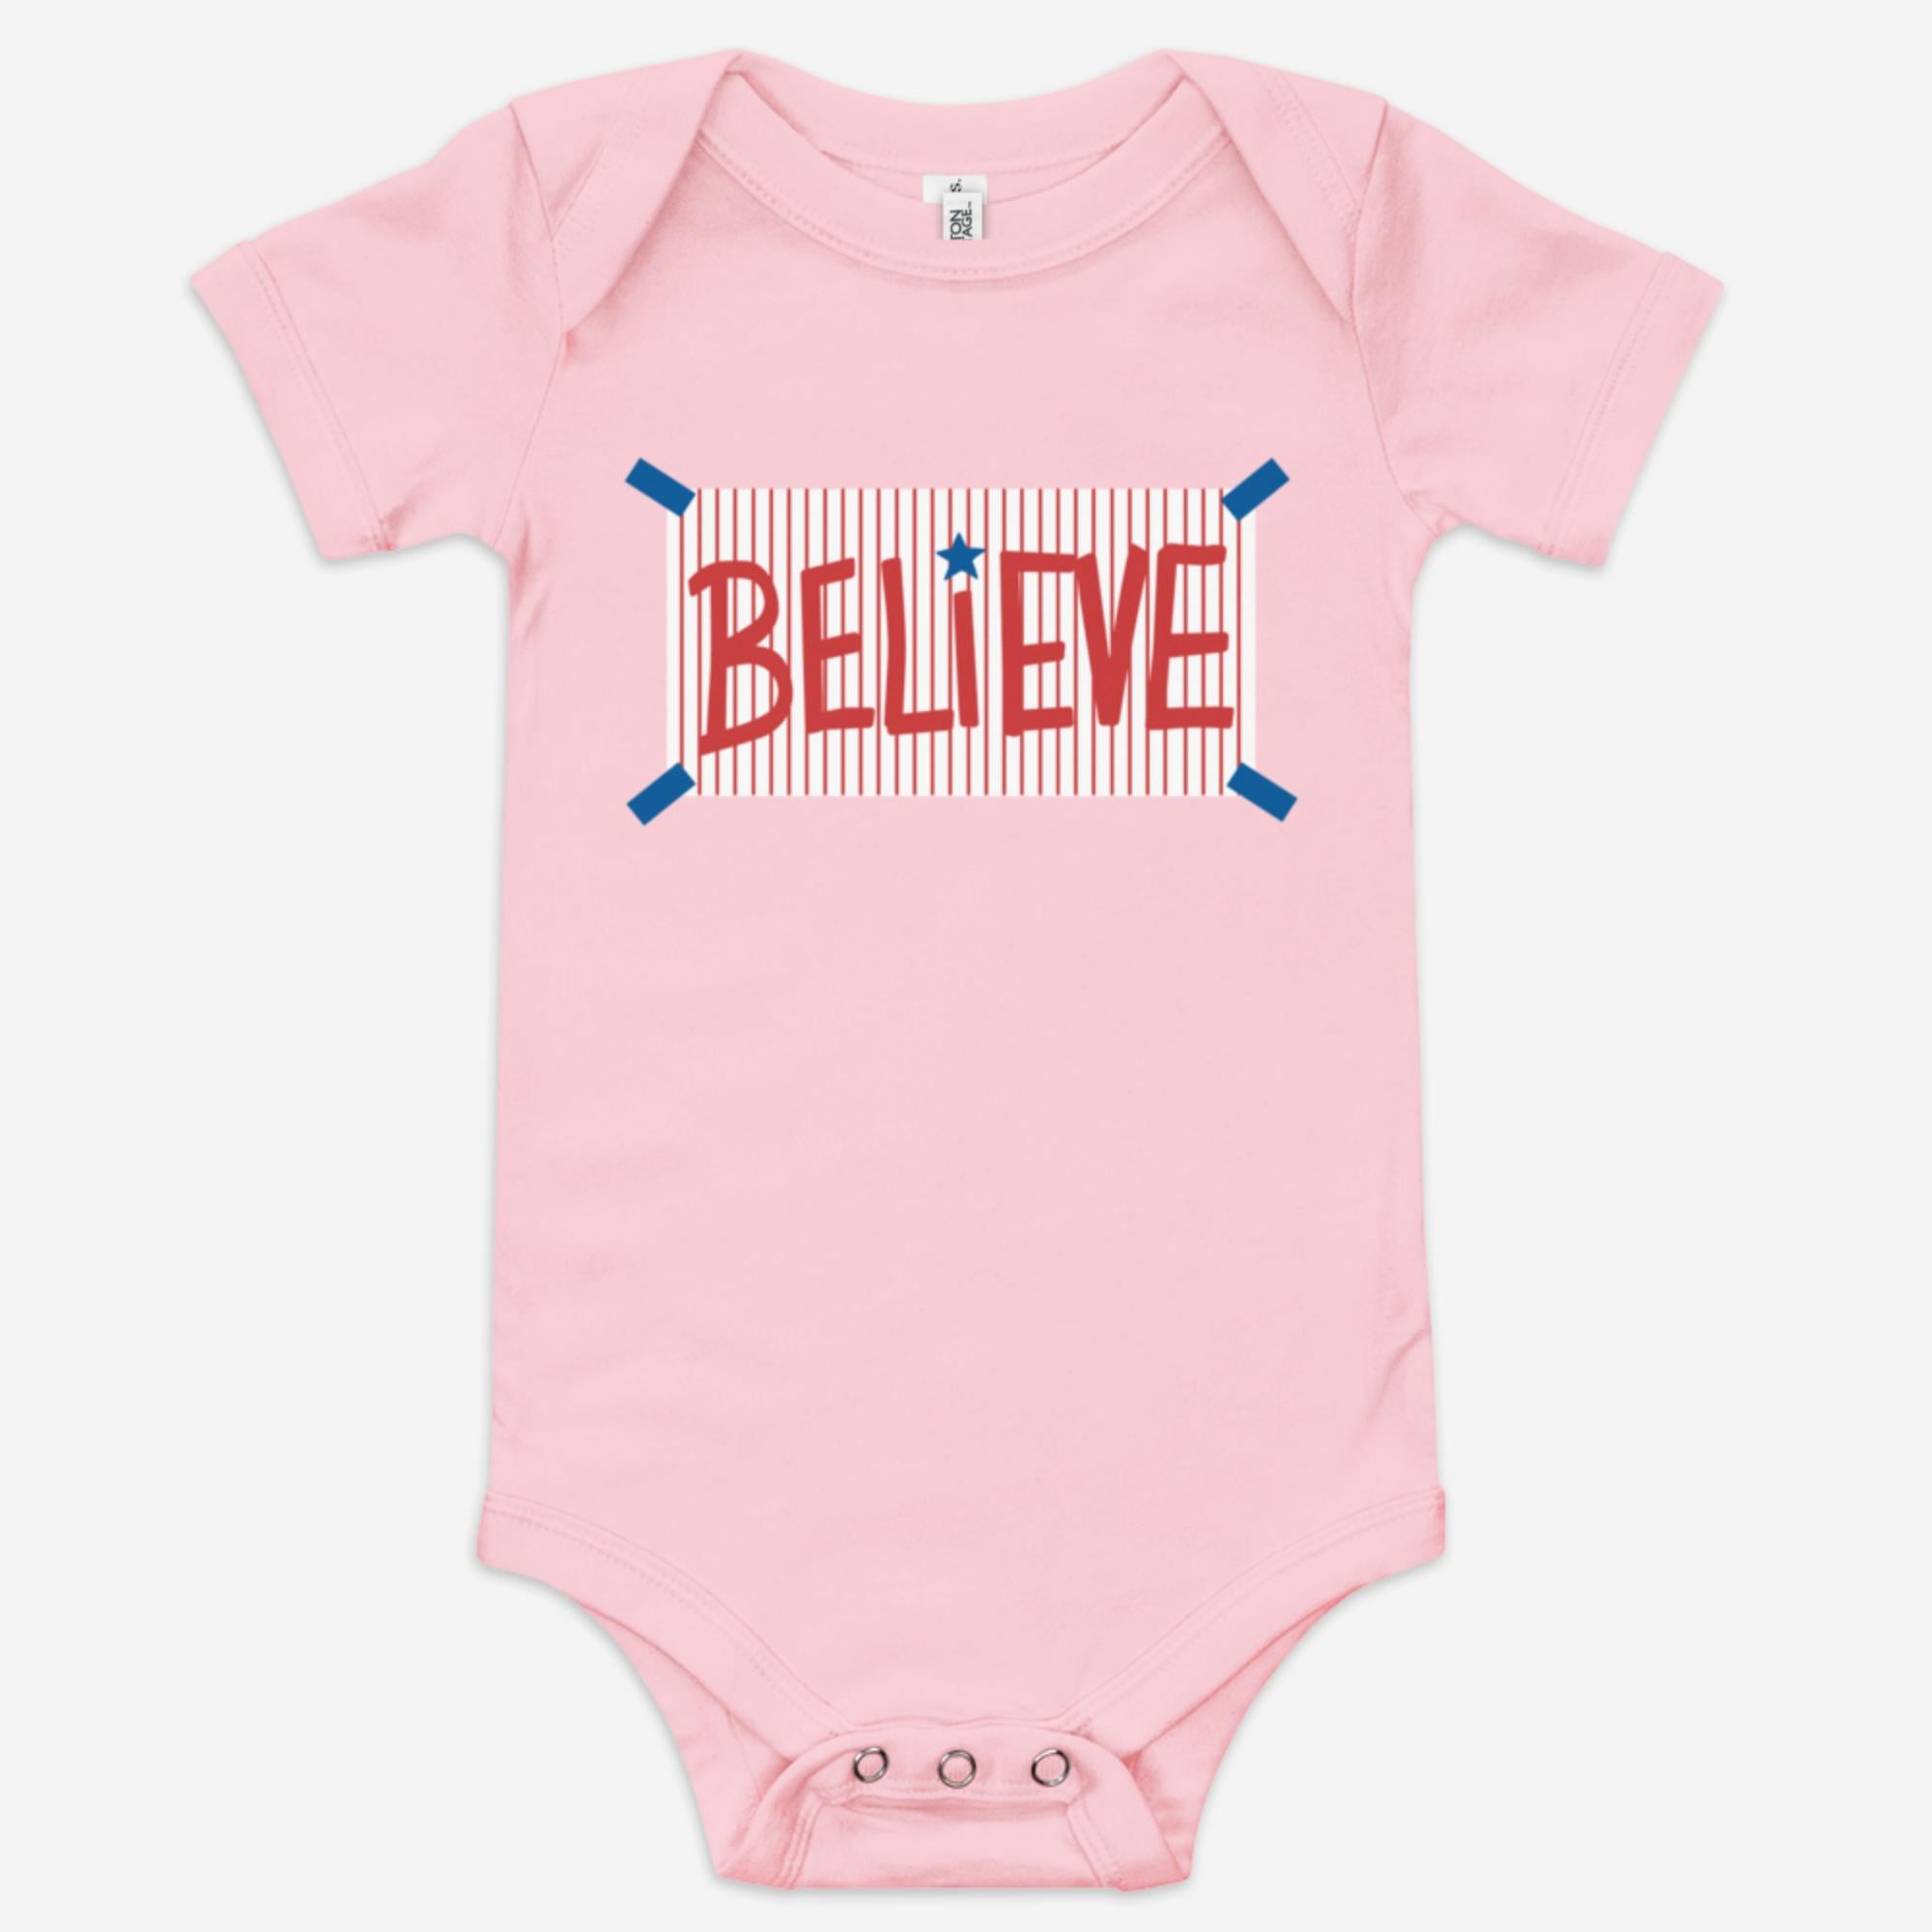 "Believe" Baby Onesie